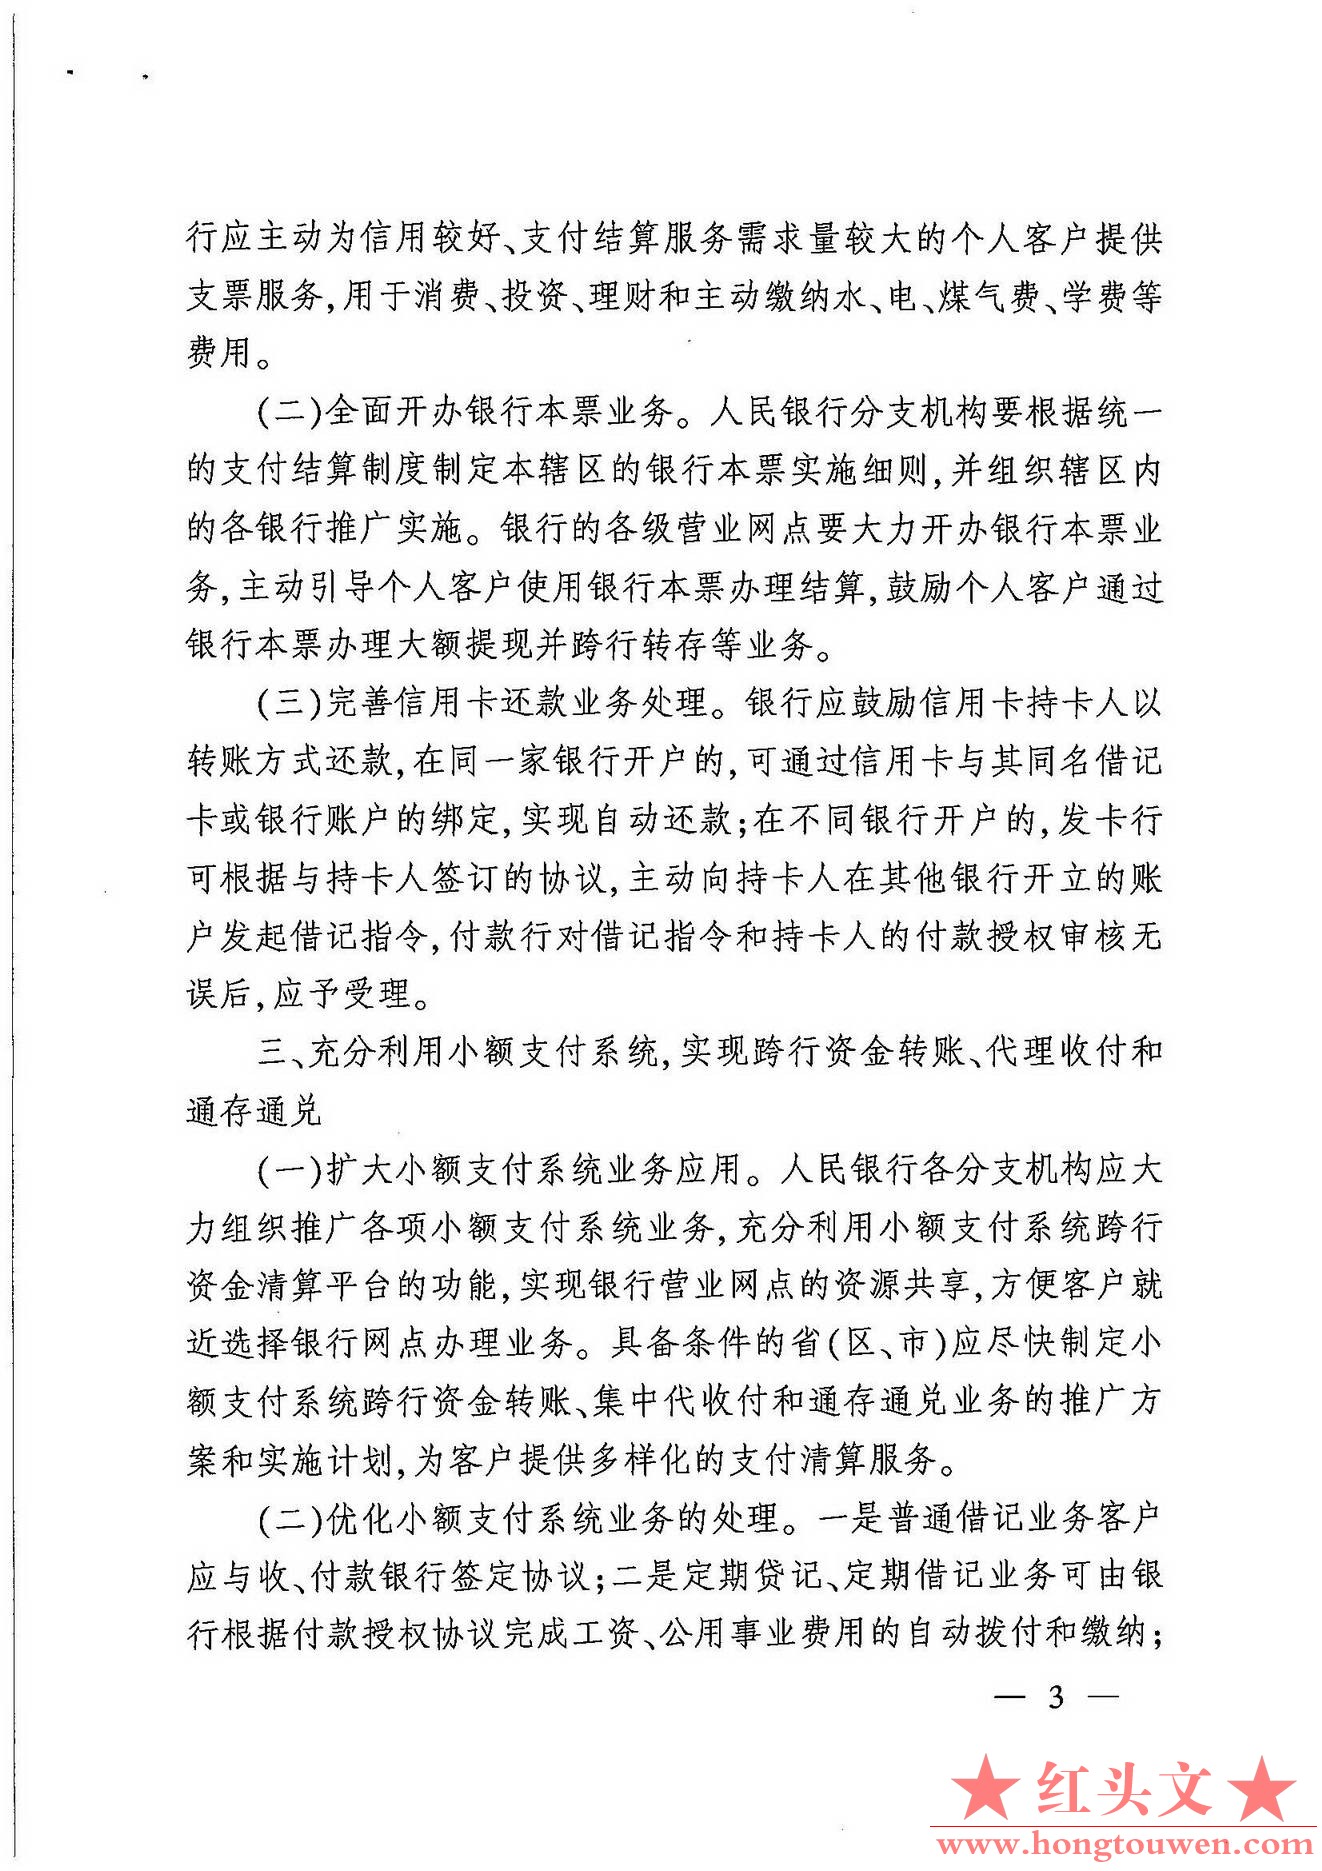 银发[2007]154号-中国人民银行关于改进个人支付结算服务的通知_页面_3.jpg.jpg